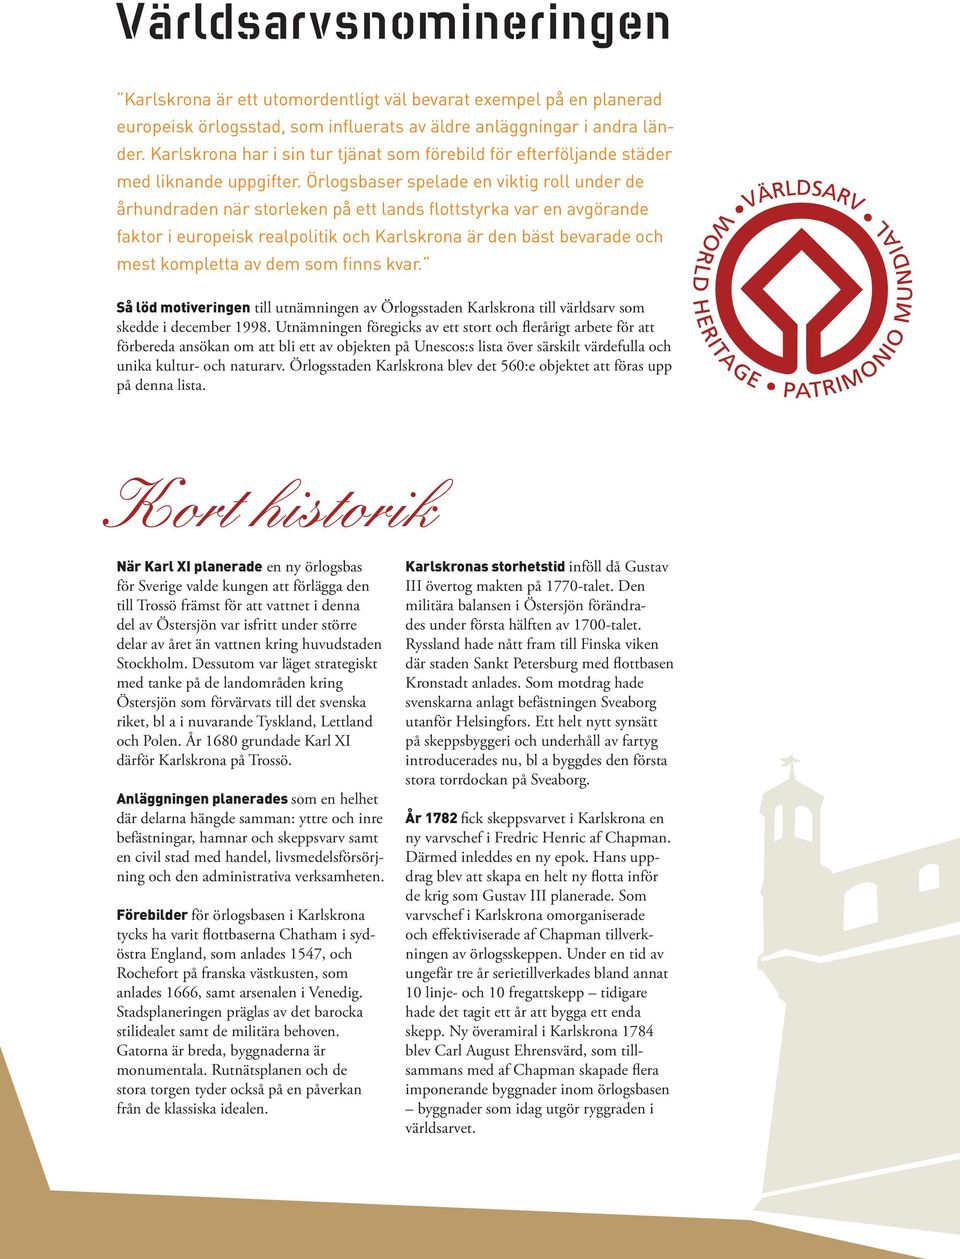 Örlogsbaser spelade en viktig roll under de århundraden när storleken på ett lands flottstyrka var en avgörande faktor i europeisk realpolitik och Karlskrona är den bäst bevarade och mest kompletta